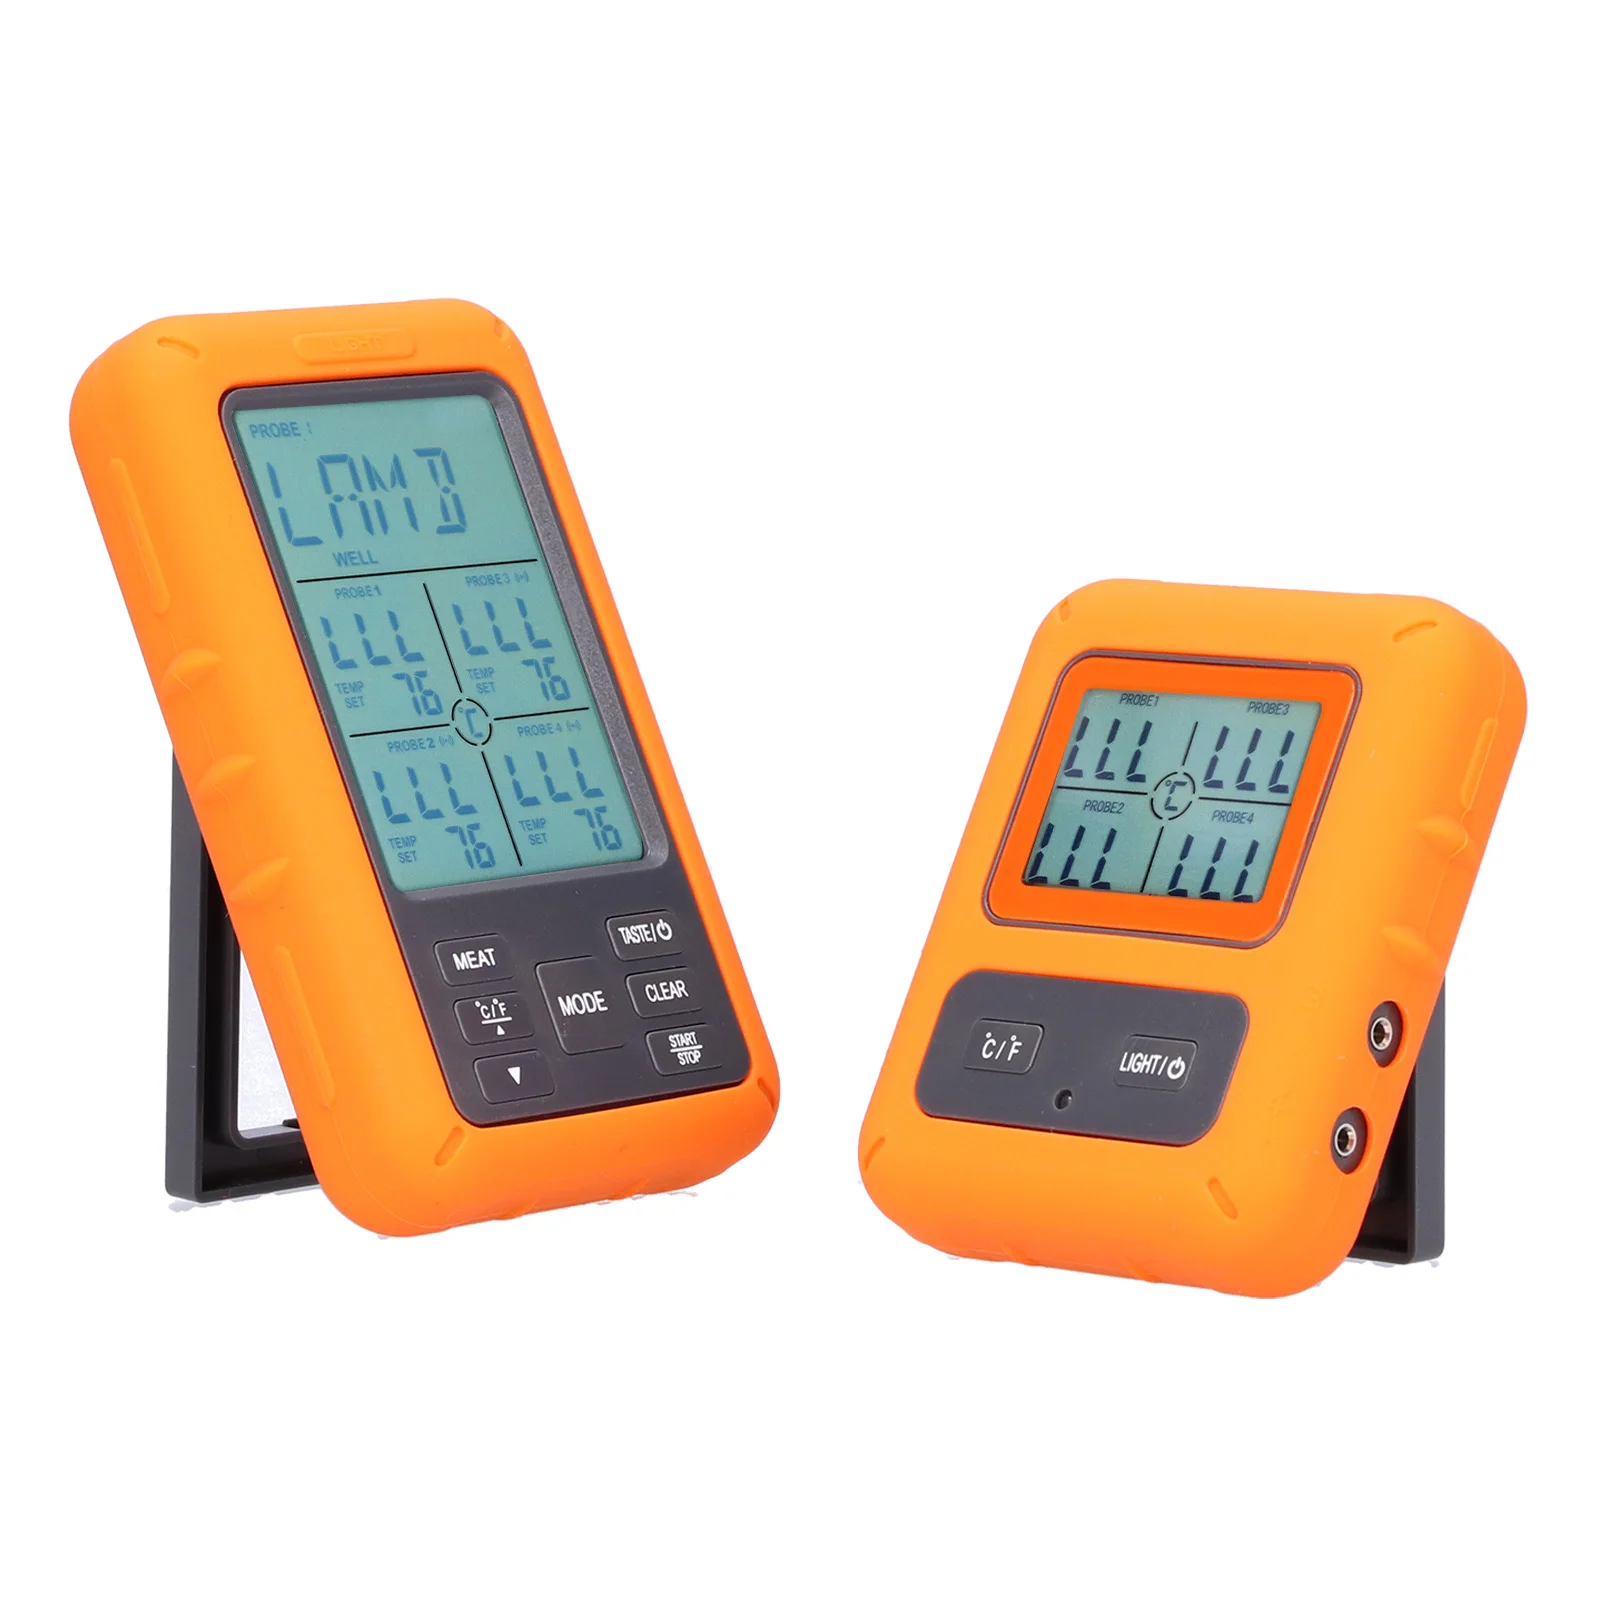 

Кухонный Термометр с таймером, беспроводной цифровой прибор для измерения температуры мяса, гриля, духовки, барбекю, 4 щупа